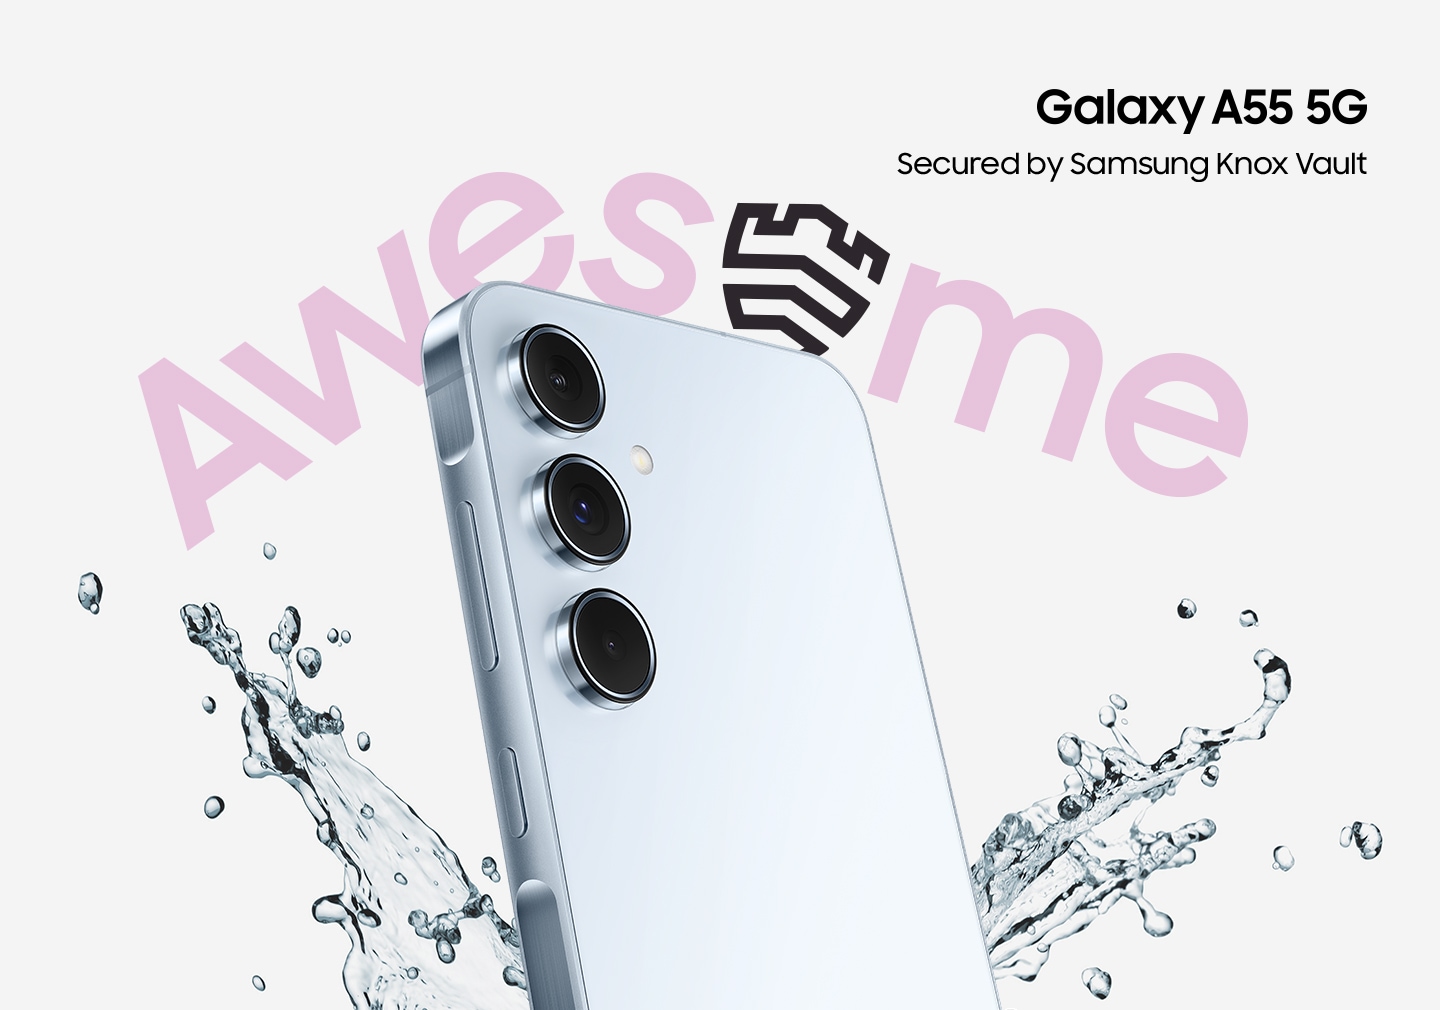 Galaxy A55 5G prikazan pod kutom s prskanjem vode oko njega s riječju 'FENOMENALNO'. Logo Galaxy A55 5G. Tekst glasi Osigurano Samsung Knox Vaultom.